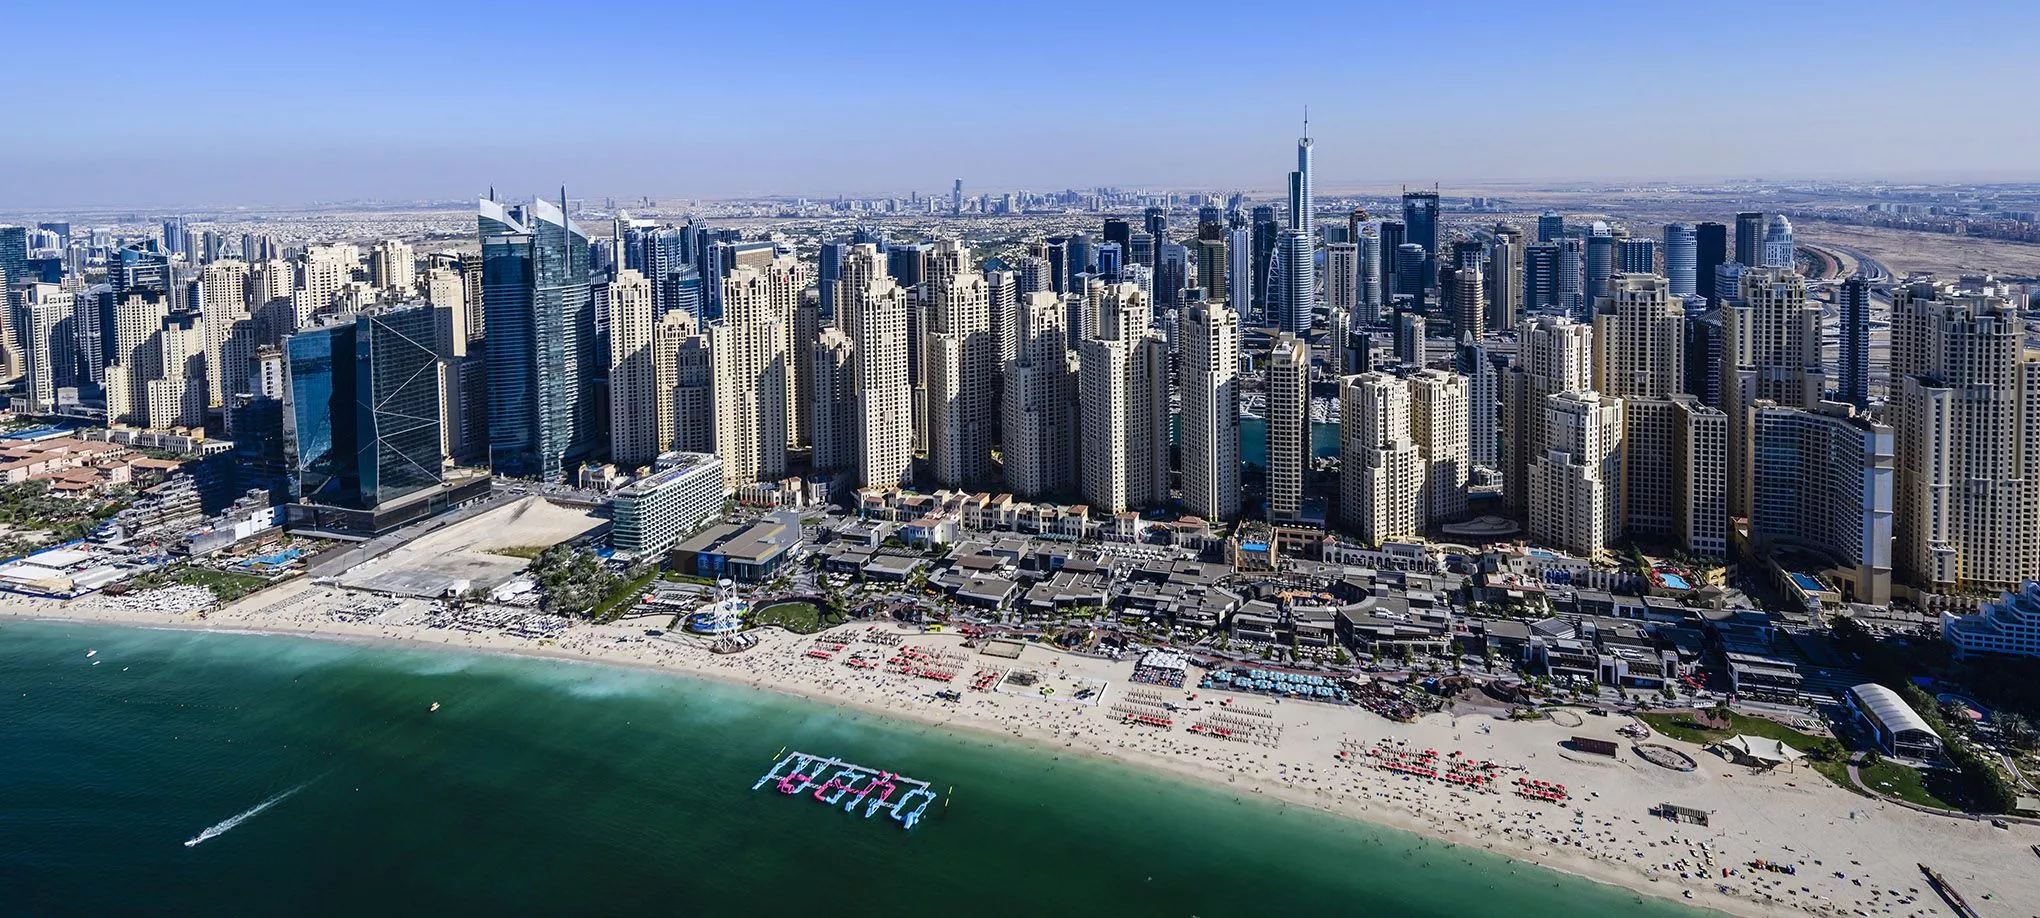 Blick auf den Jumeirah Beach aus der Vogelperspektive